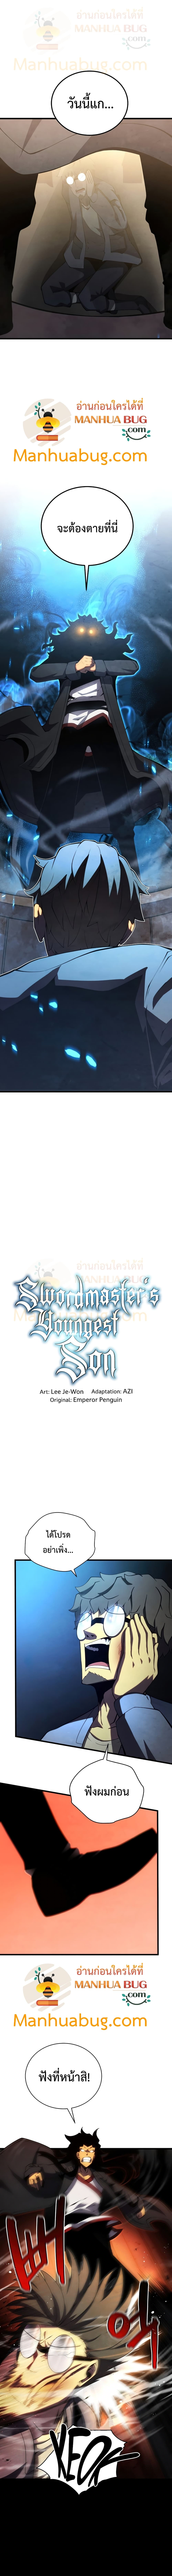 Swordmaster’s Youngest Son 40-40